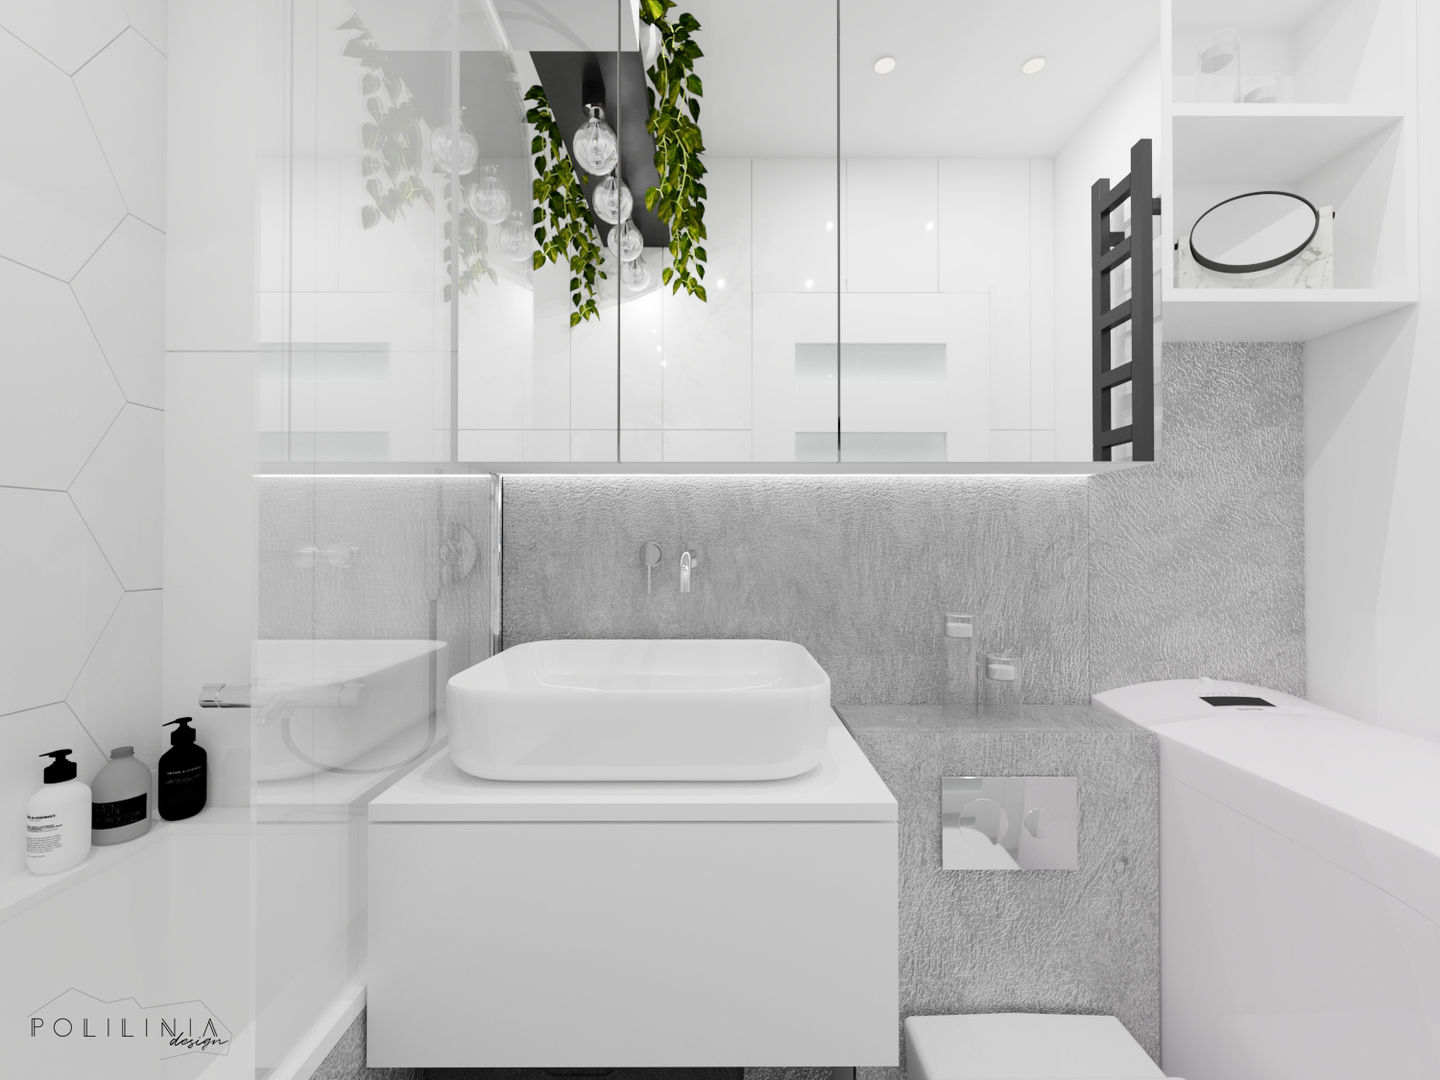 Biała łazienka, Polilinia Design Polilinia Design حمام